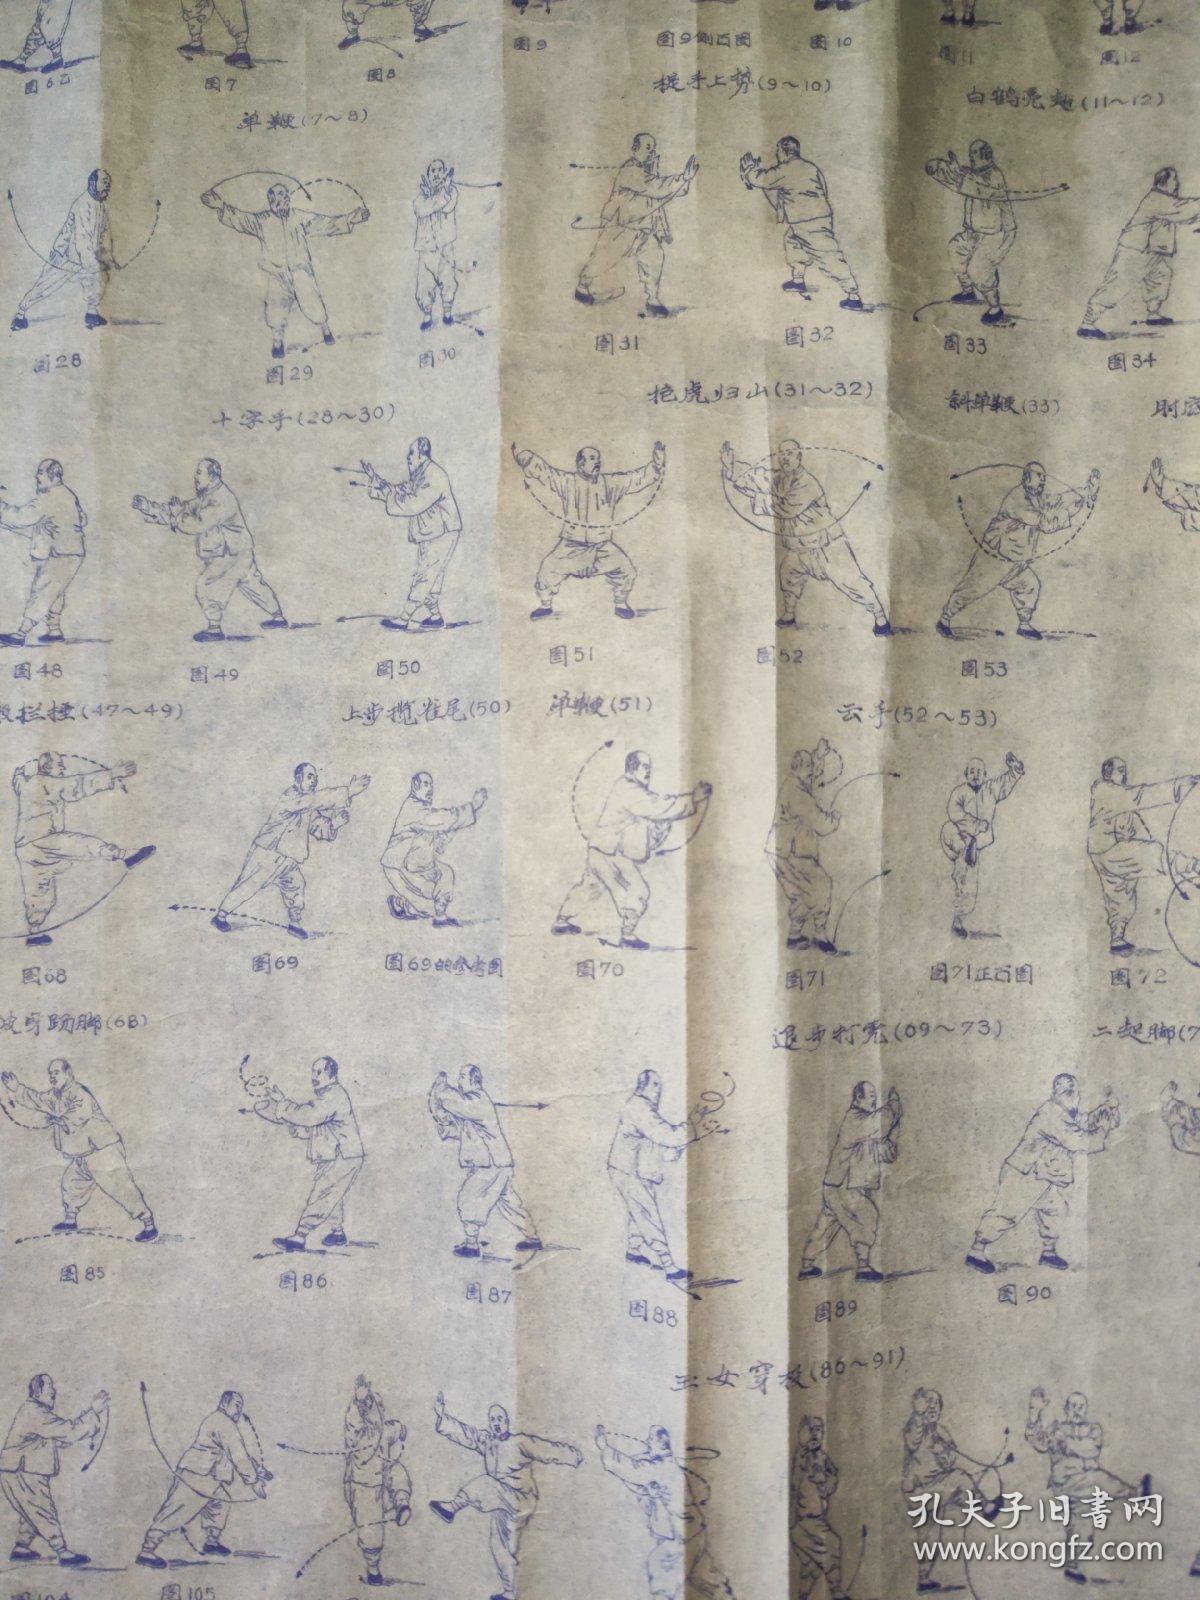 1974年《吴氏太极拳动作图解》，尺寸95×60cm